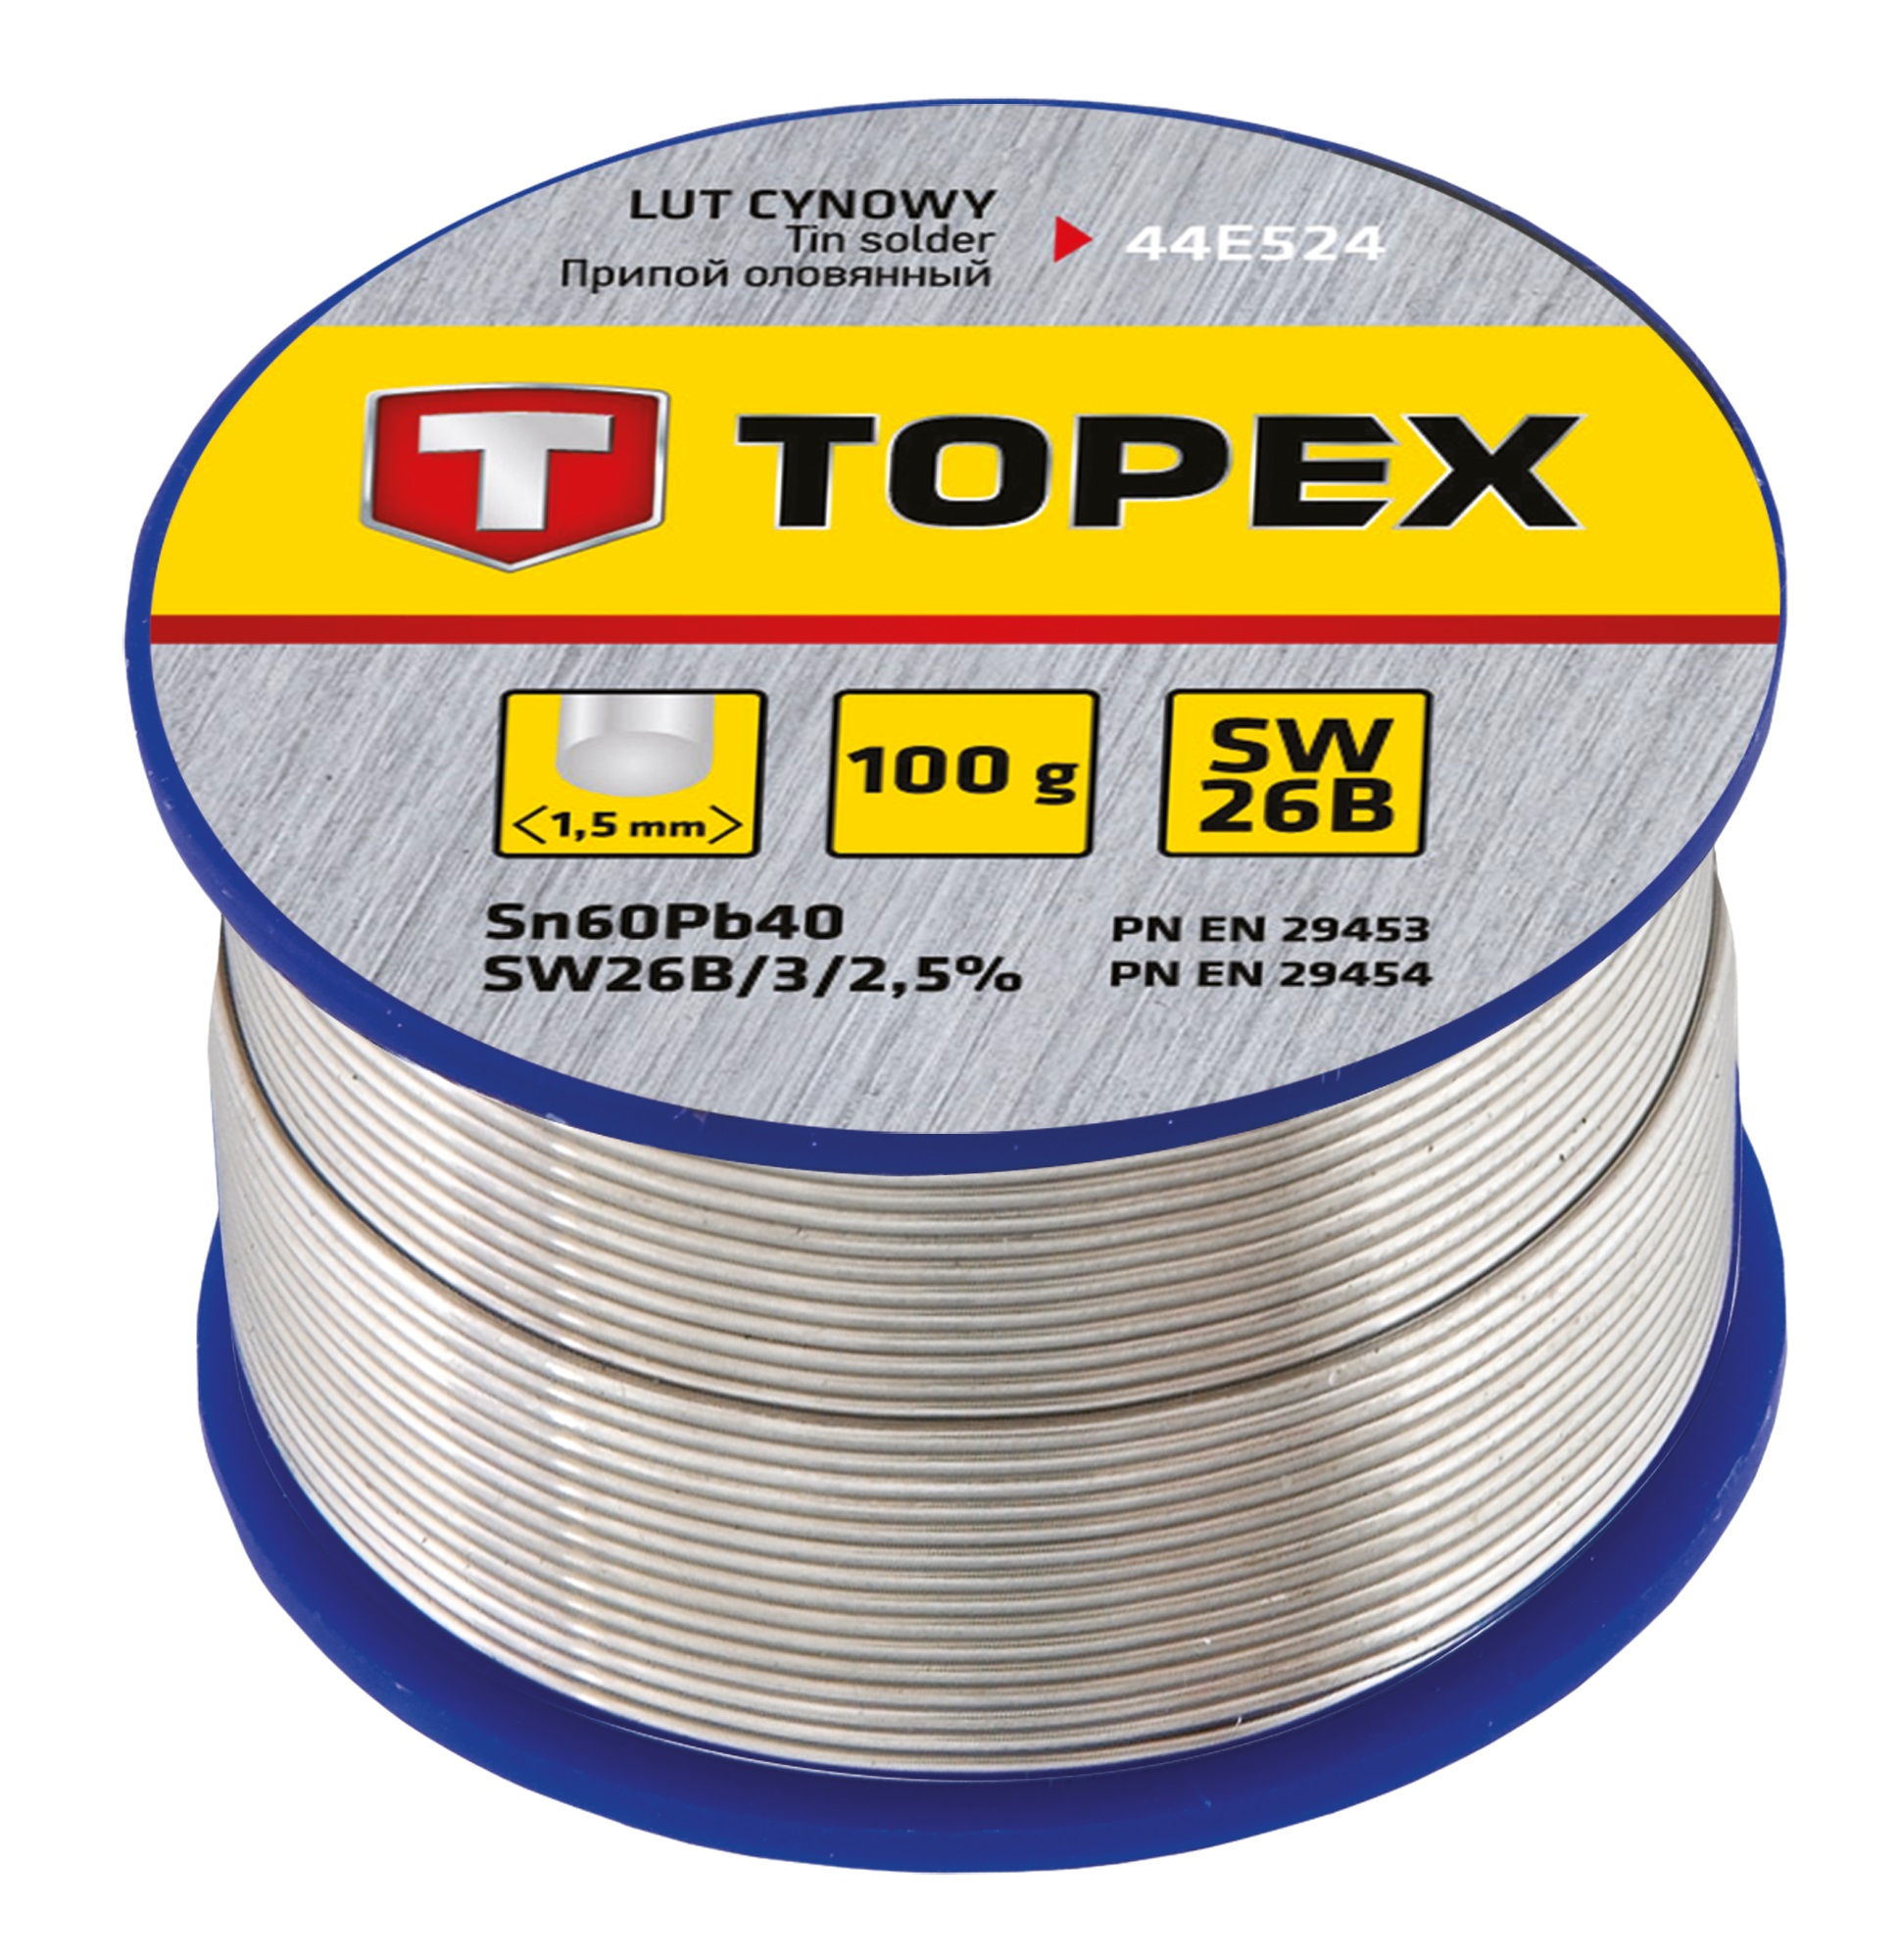 Припій для паяння Topex 44E524